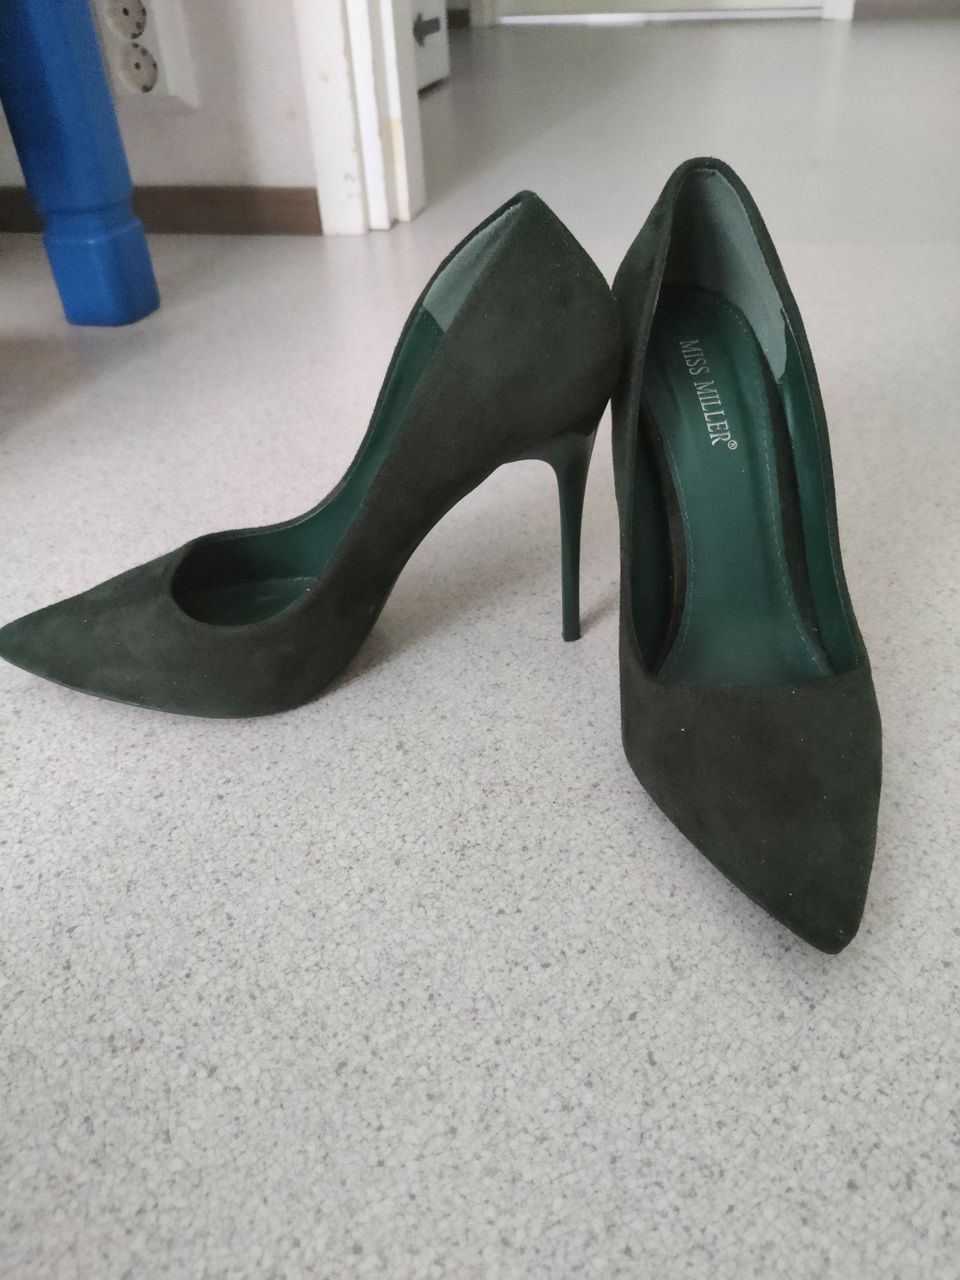 Naisten kengät väri vihreä koko 39